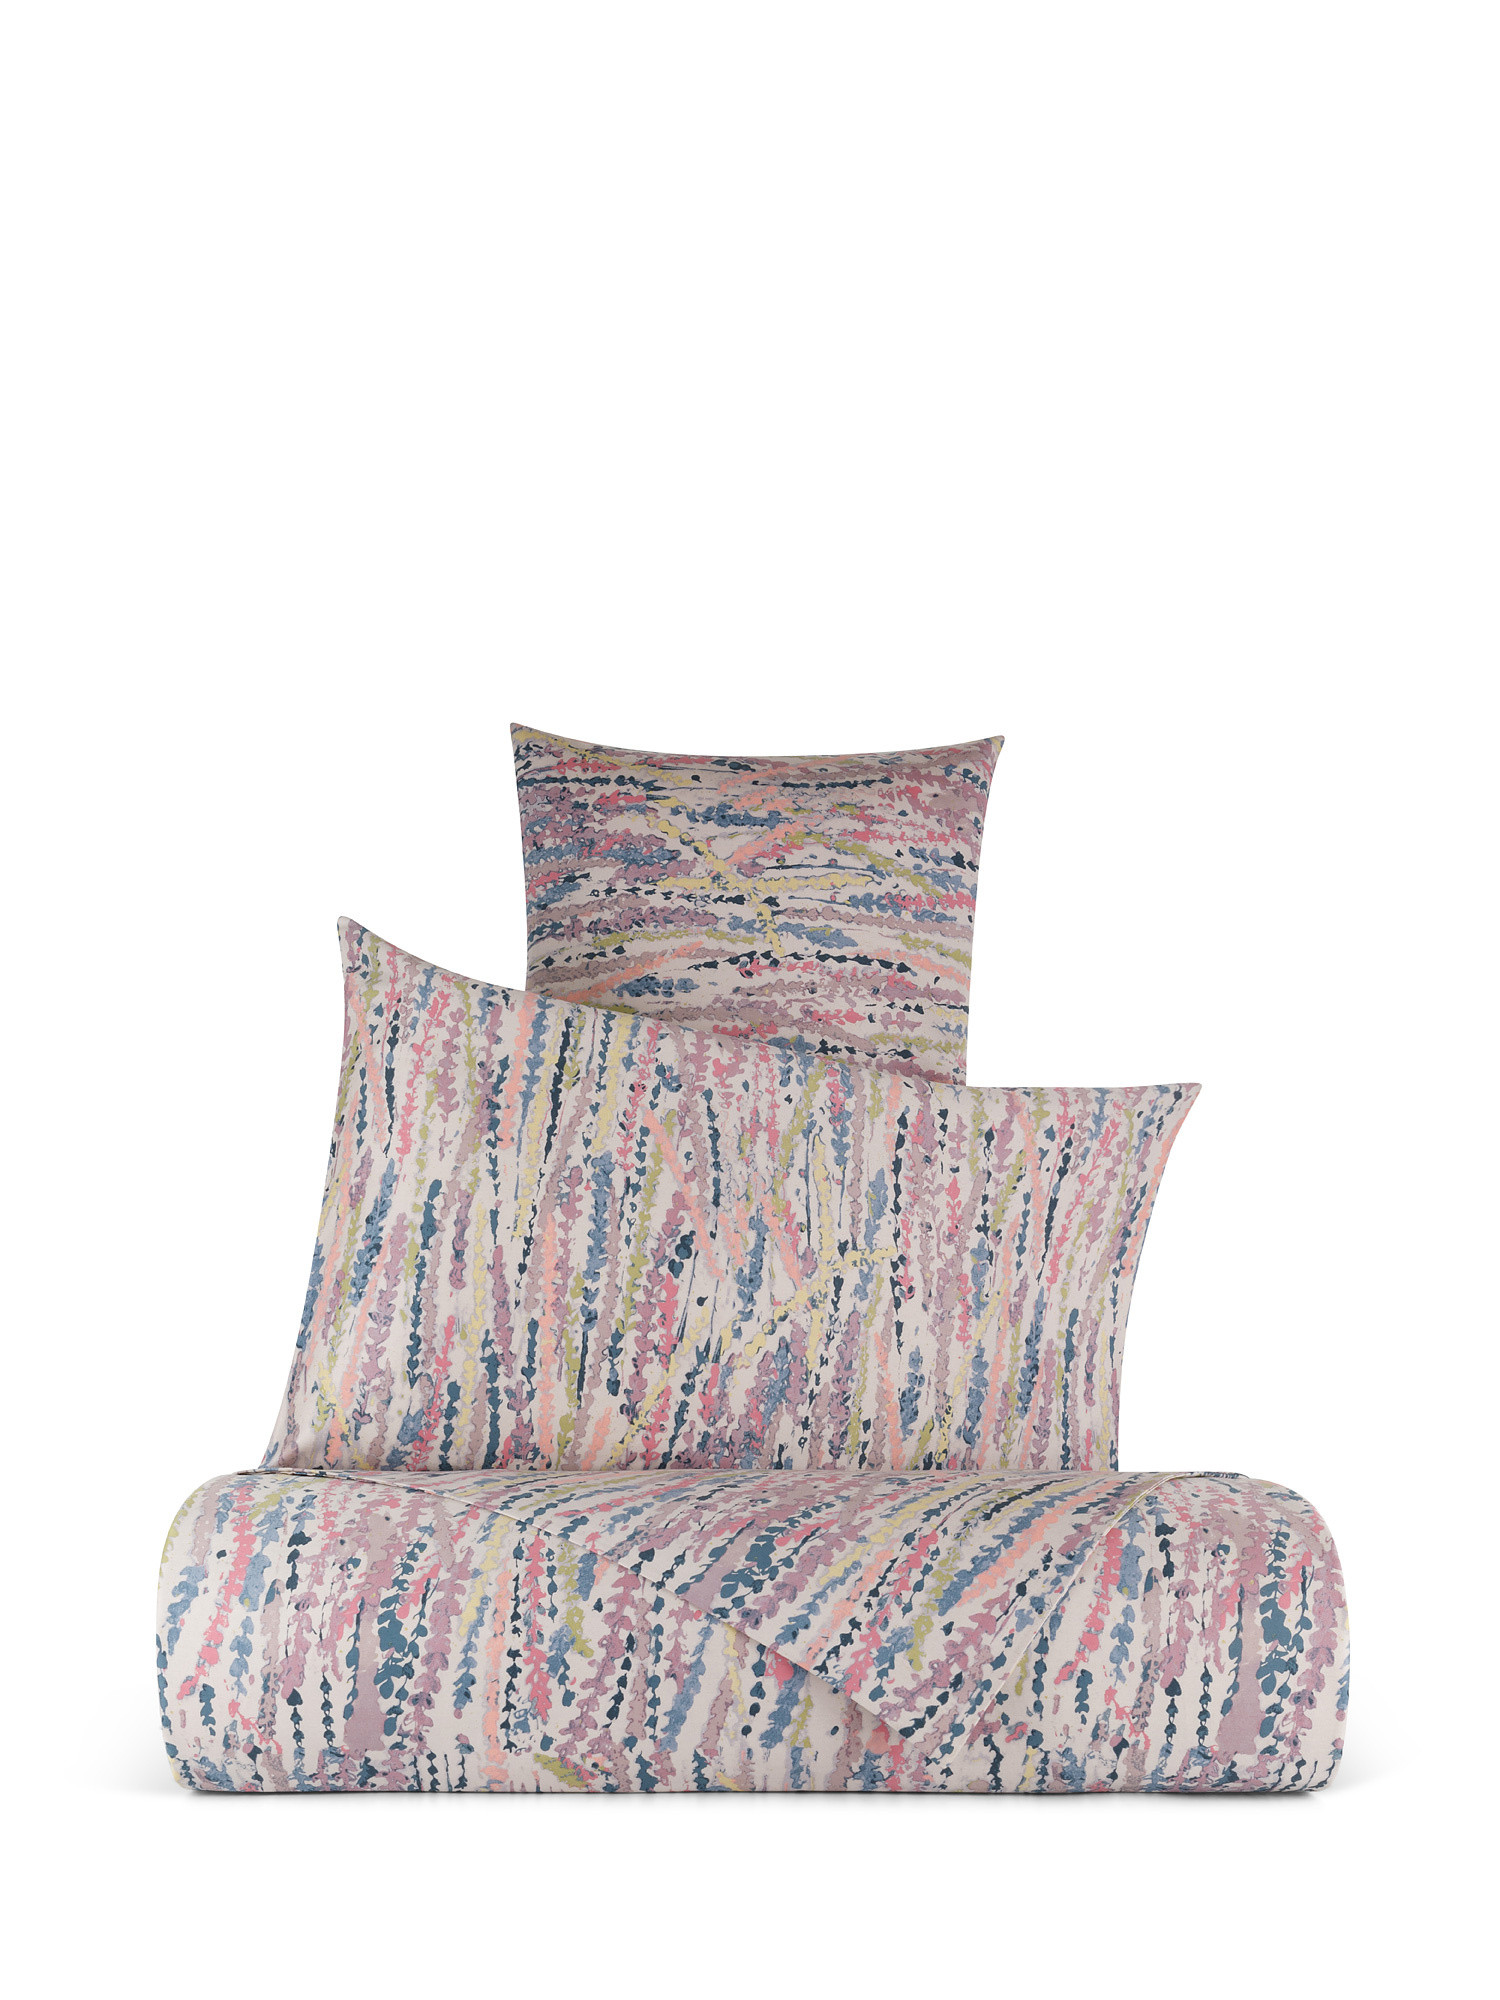 Gladioli pattern cotton satin sheet set, Multicolor, large image number 0